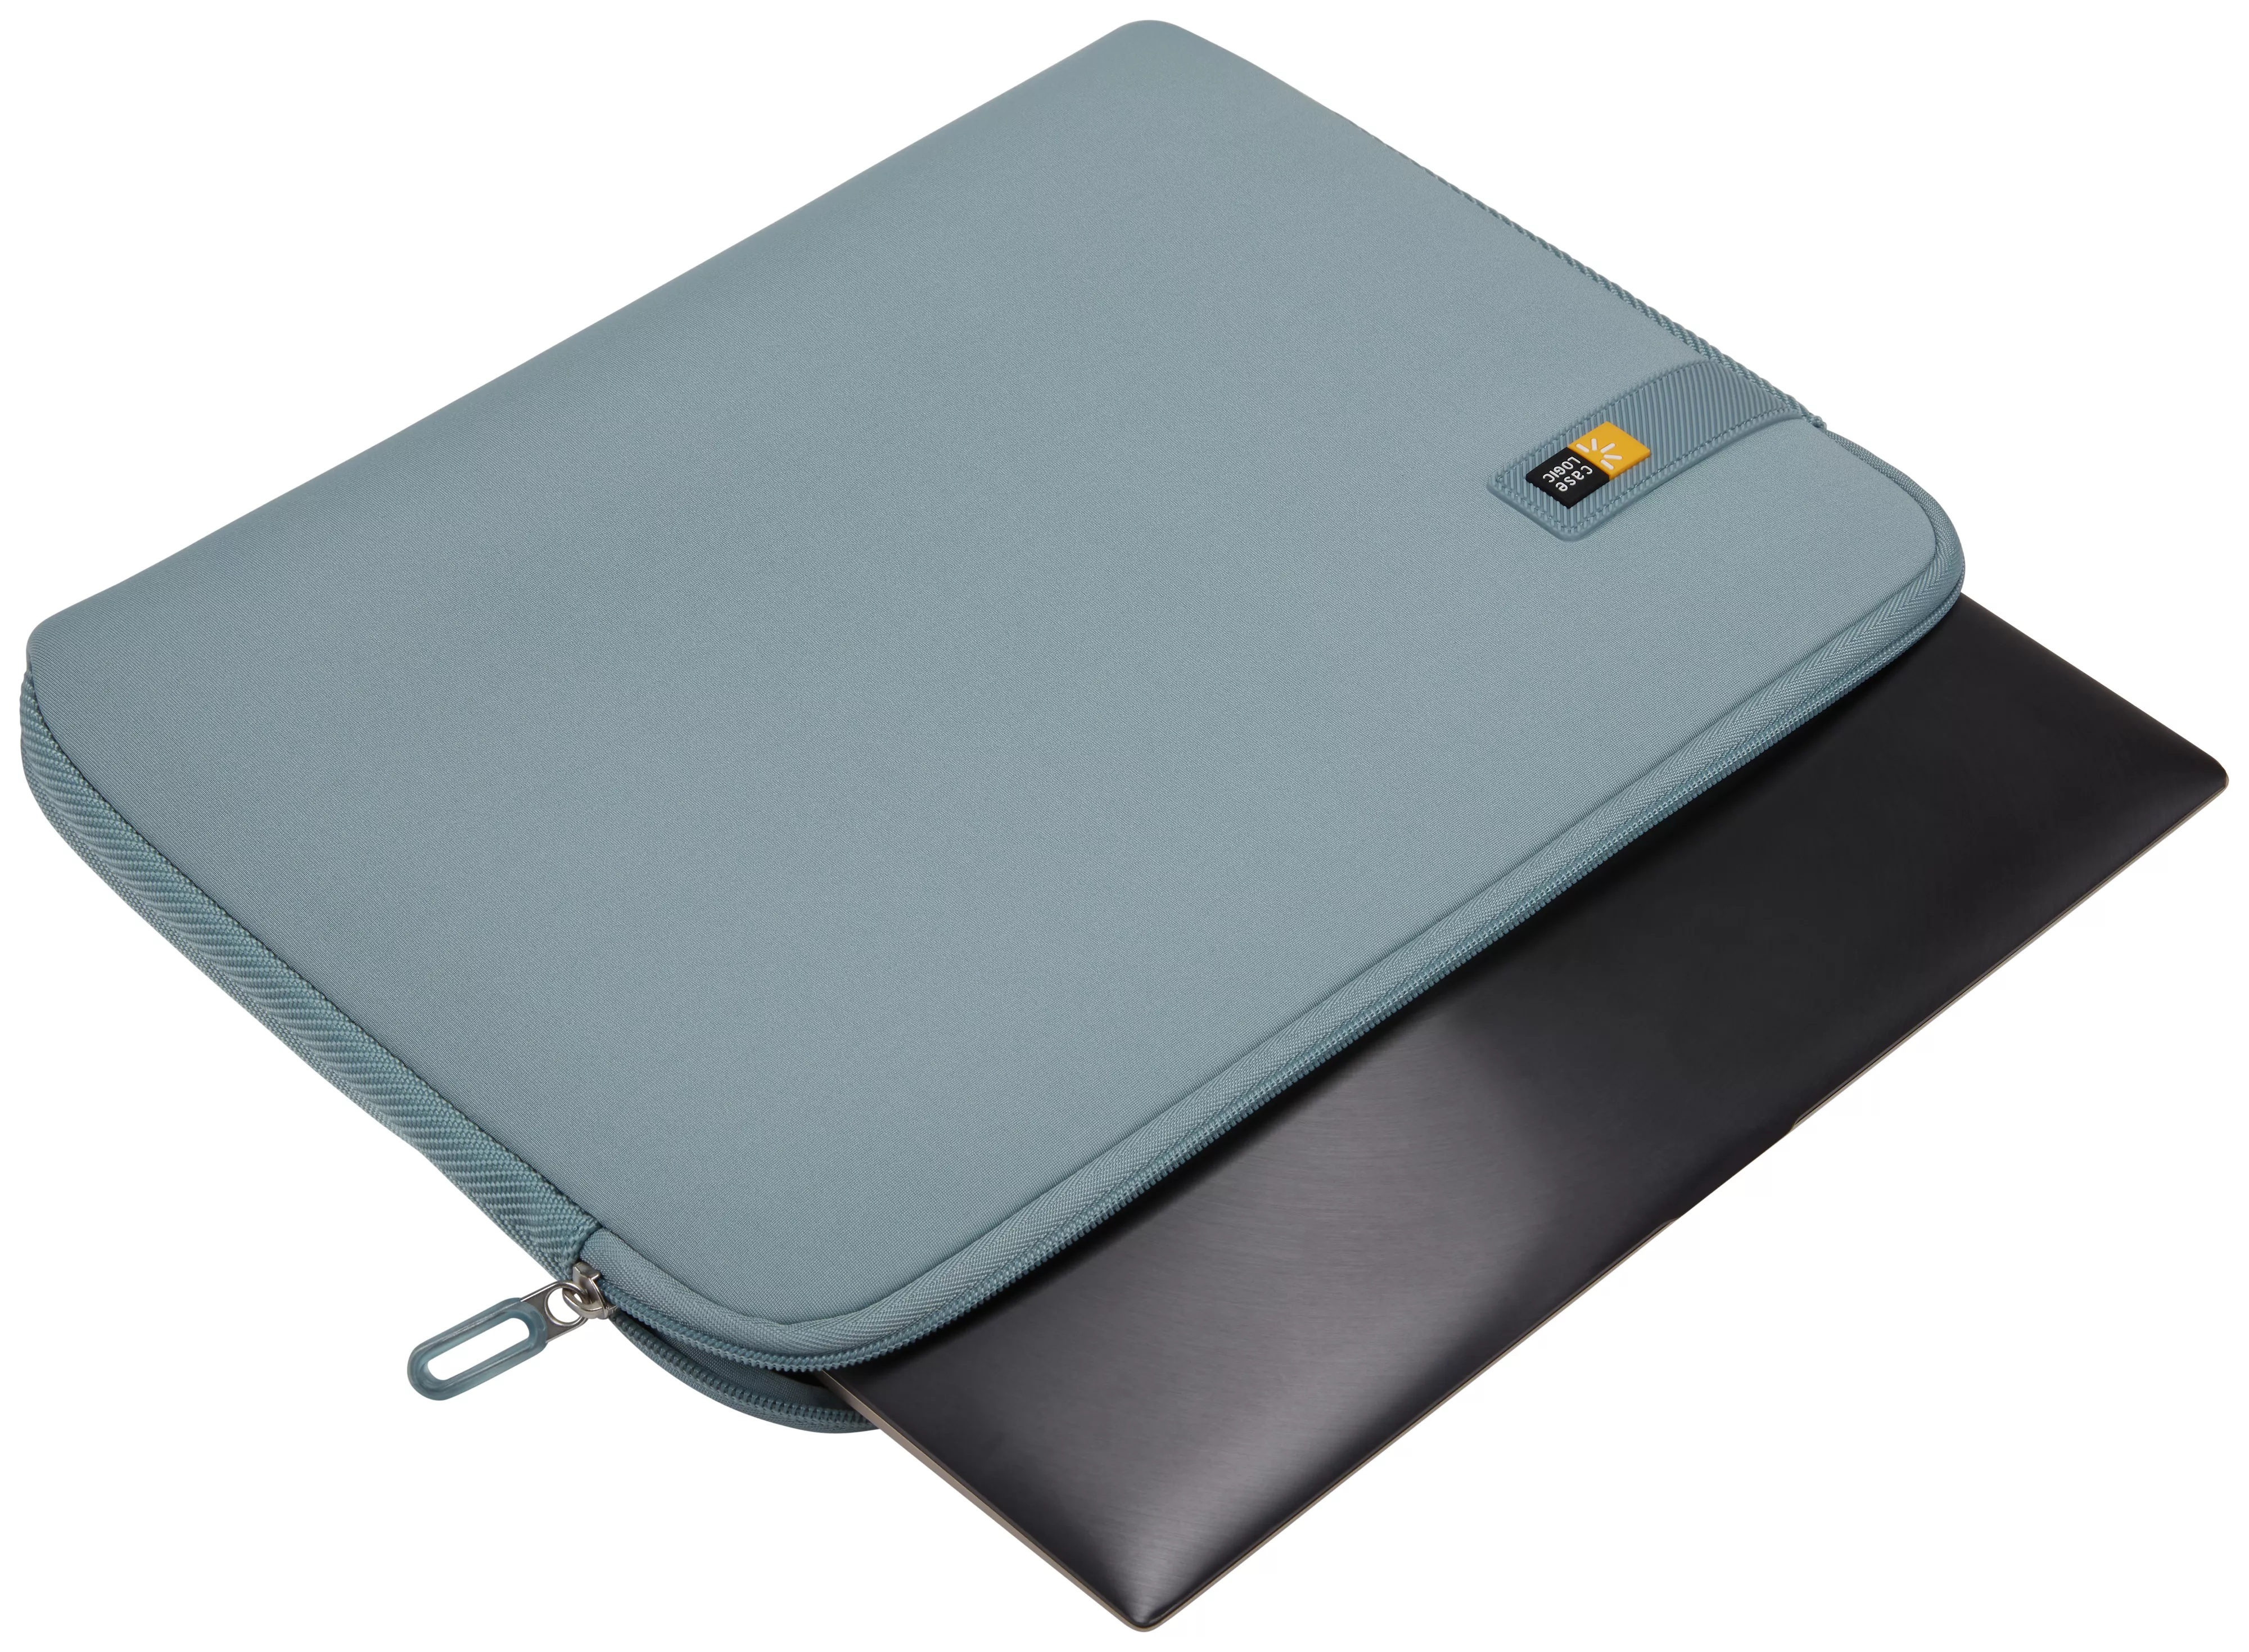 Vente Case Logic Laps LAPS-114 Arona Blue Case Logic au meilleur prix - visuel 4